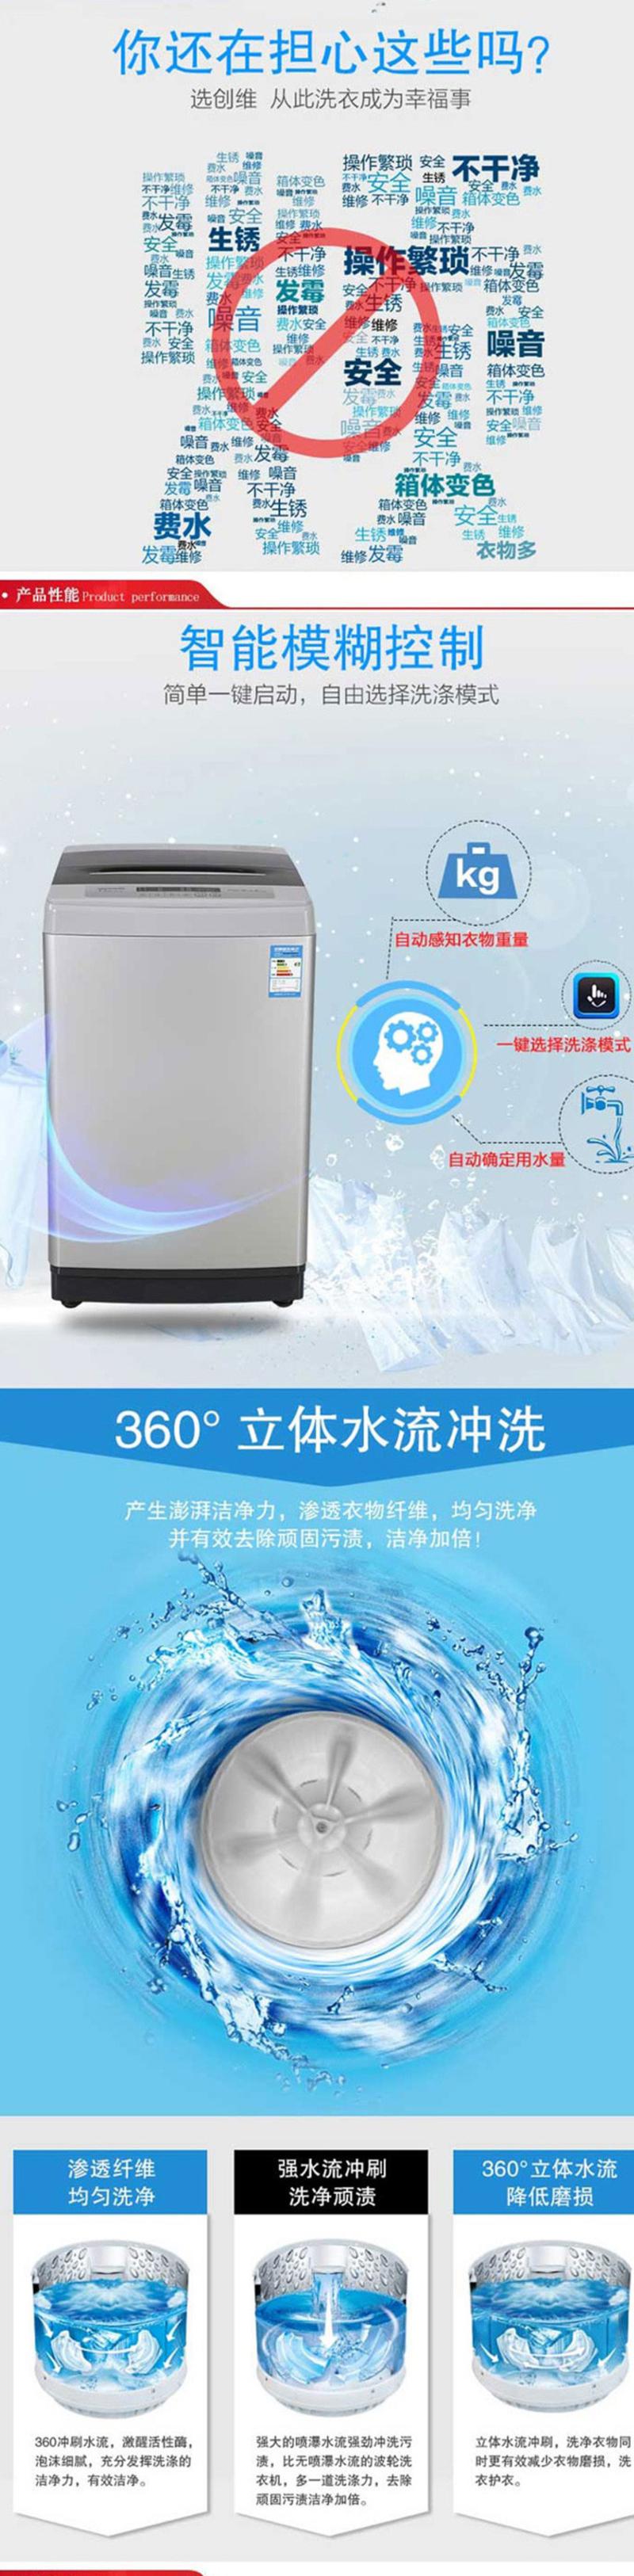 创维7公斤8档水位全自动洗衣机 创维XQB70-21C